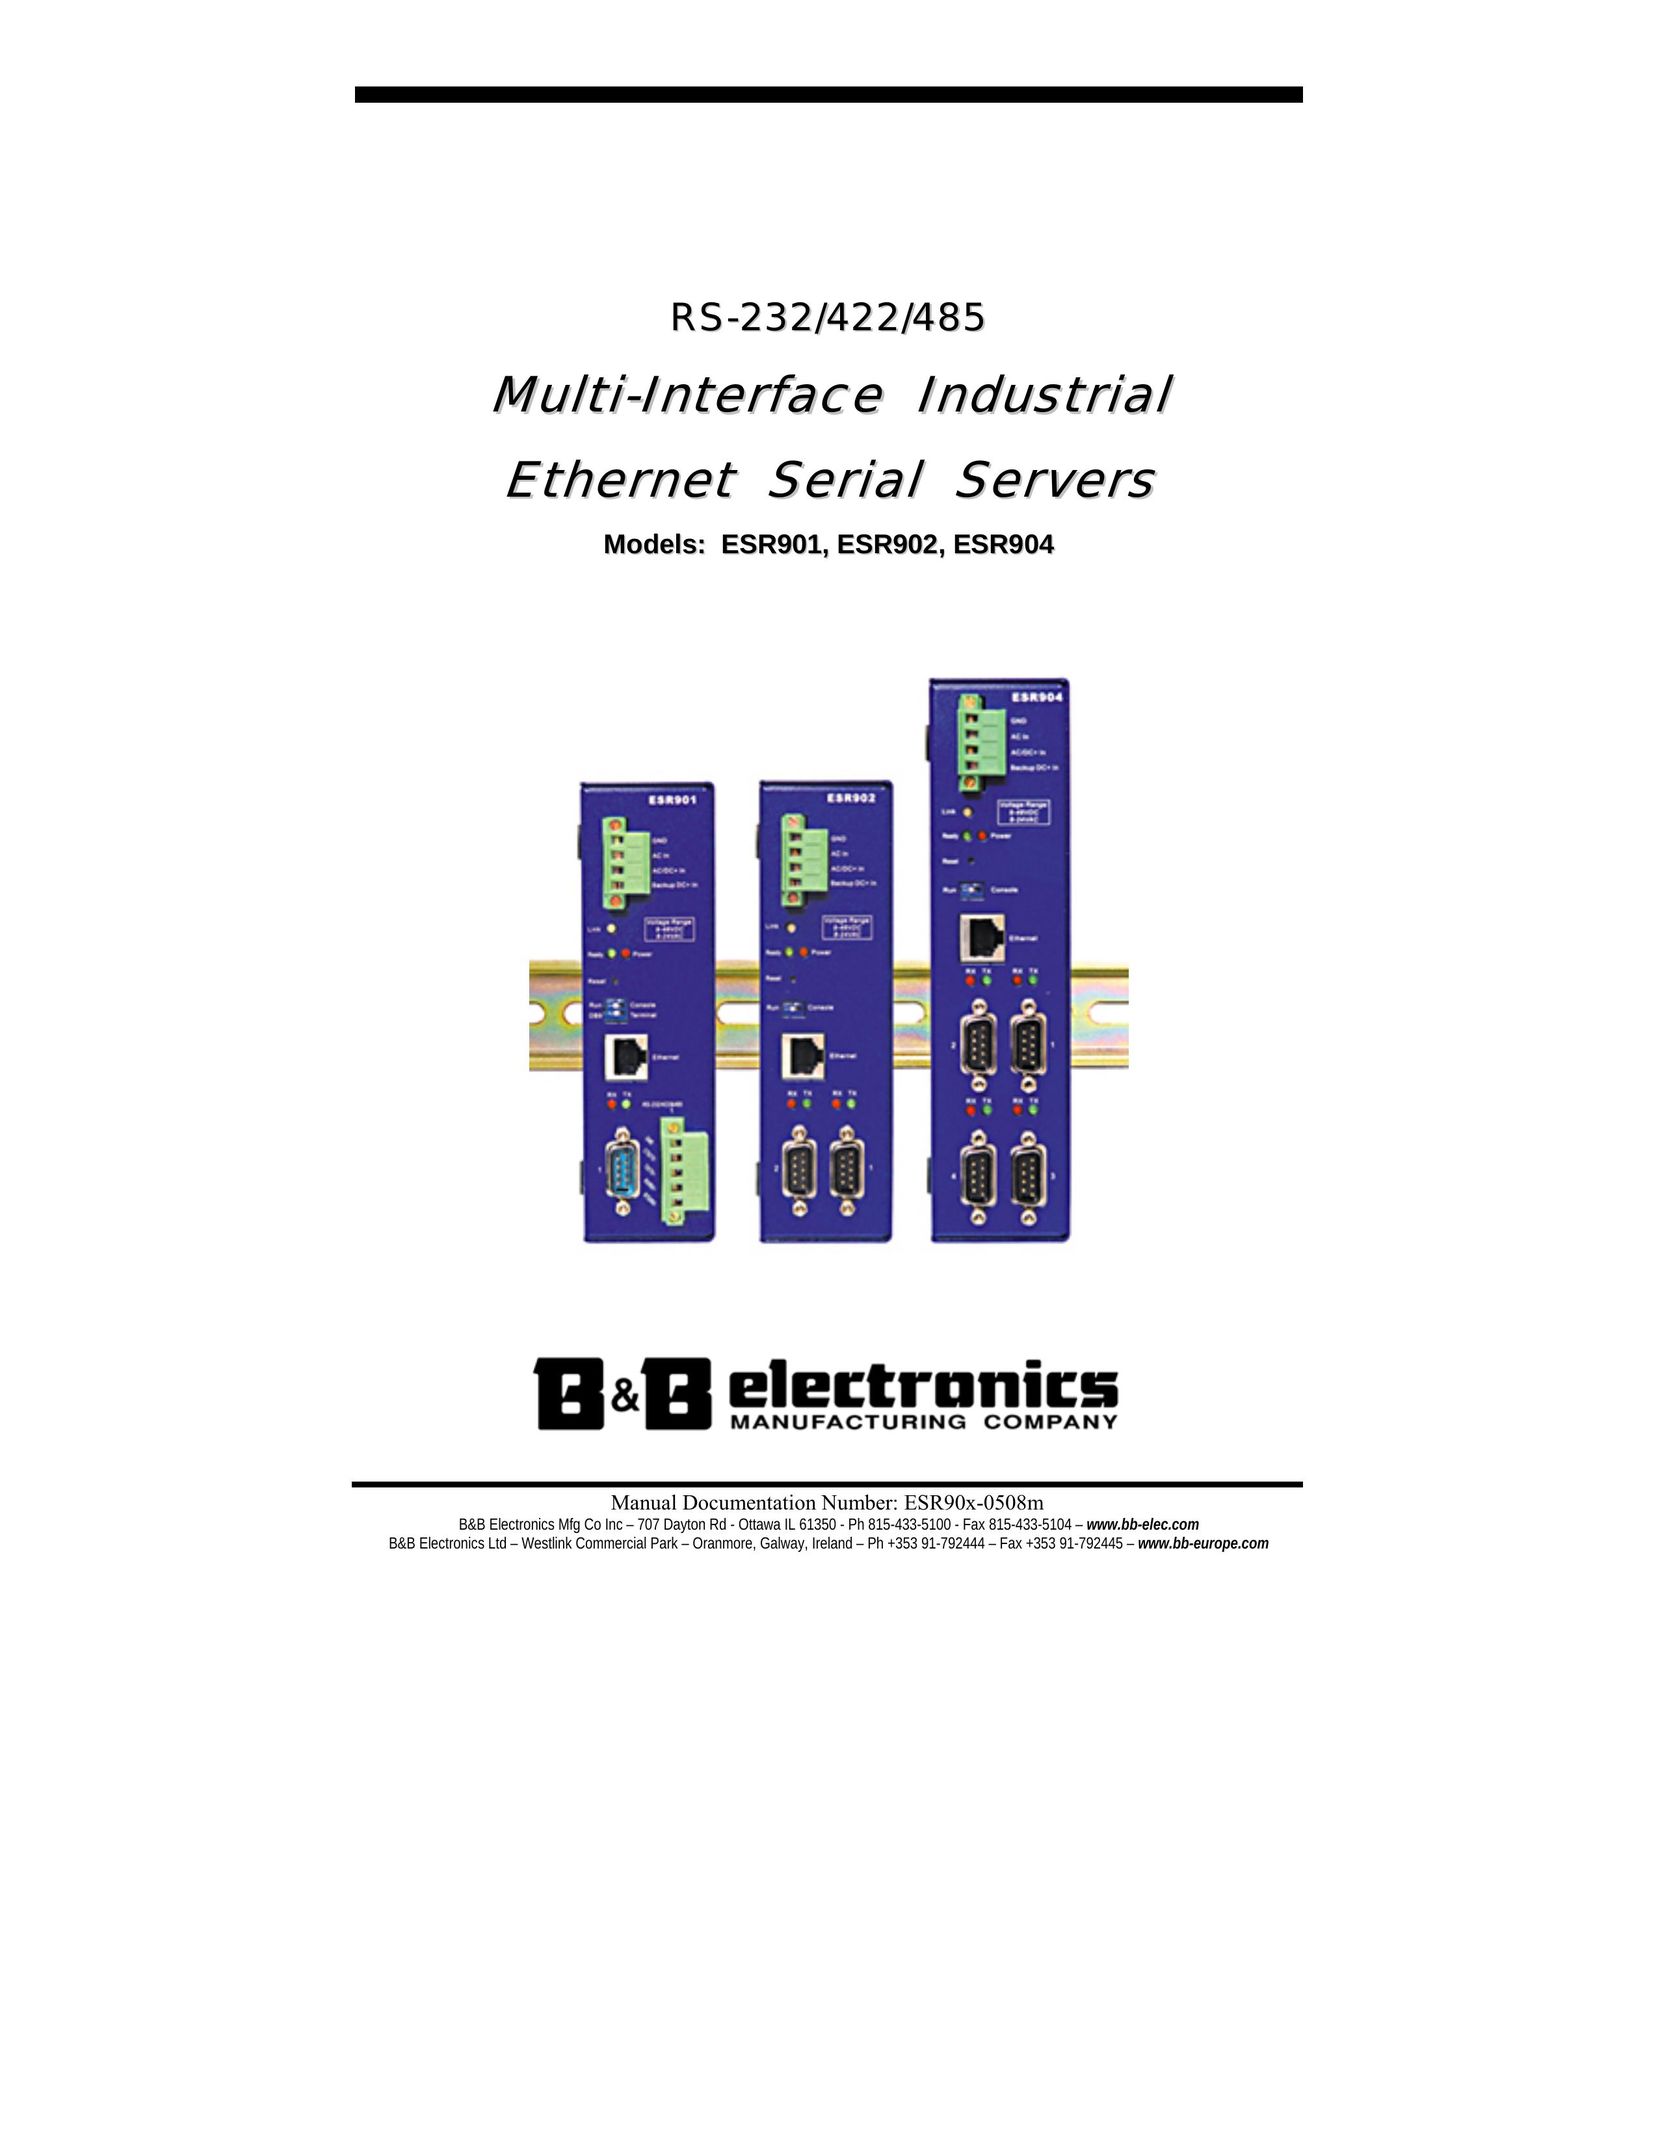 B&B Electronics ESR904 Model Vehicle User Manual